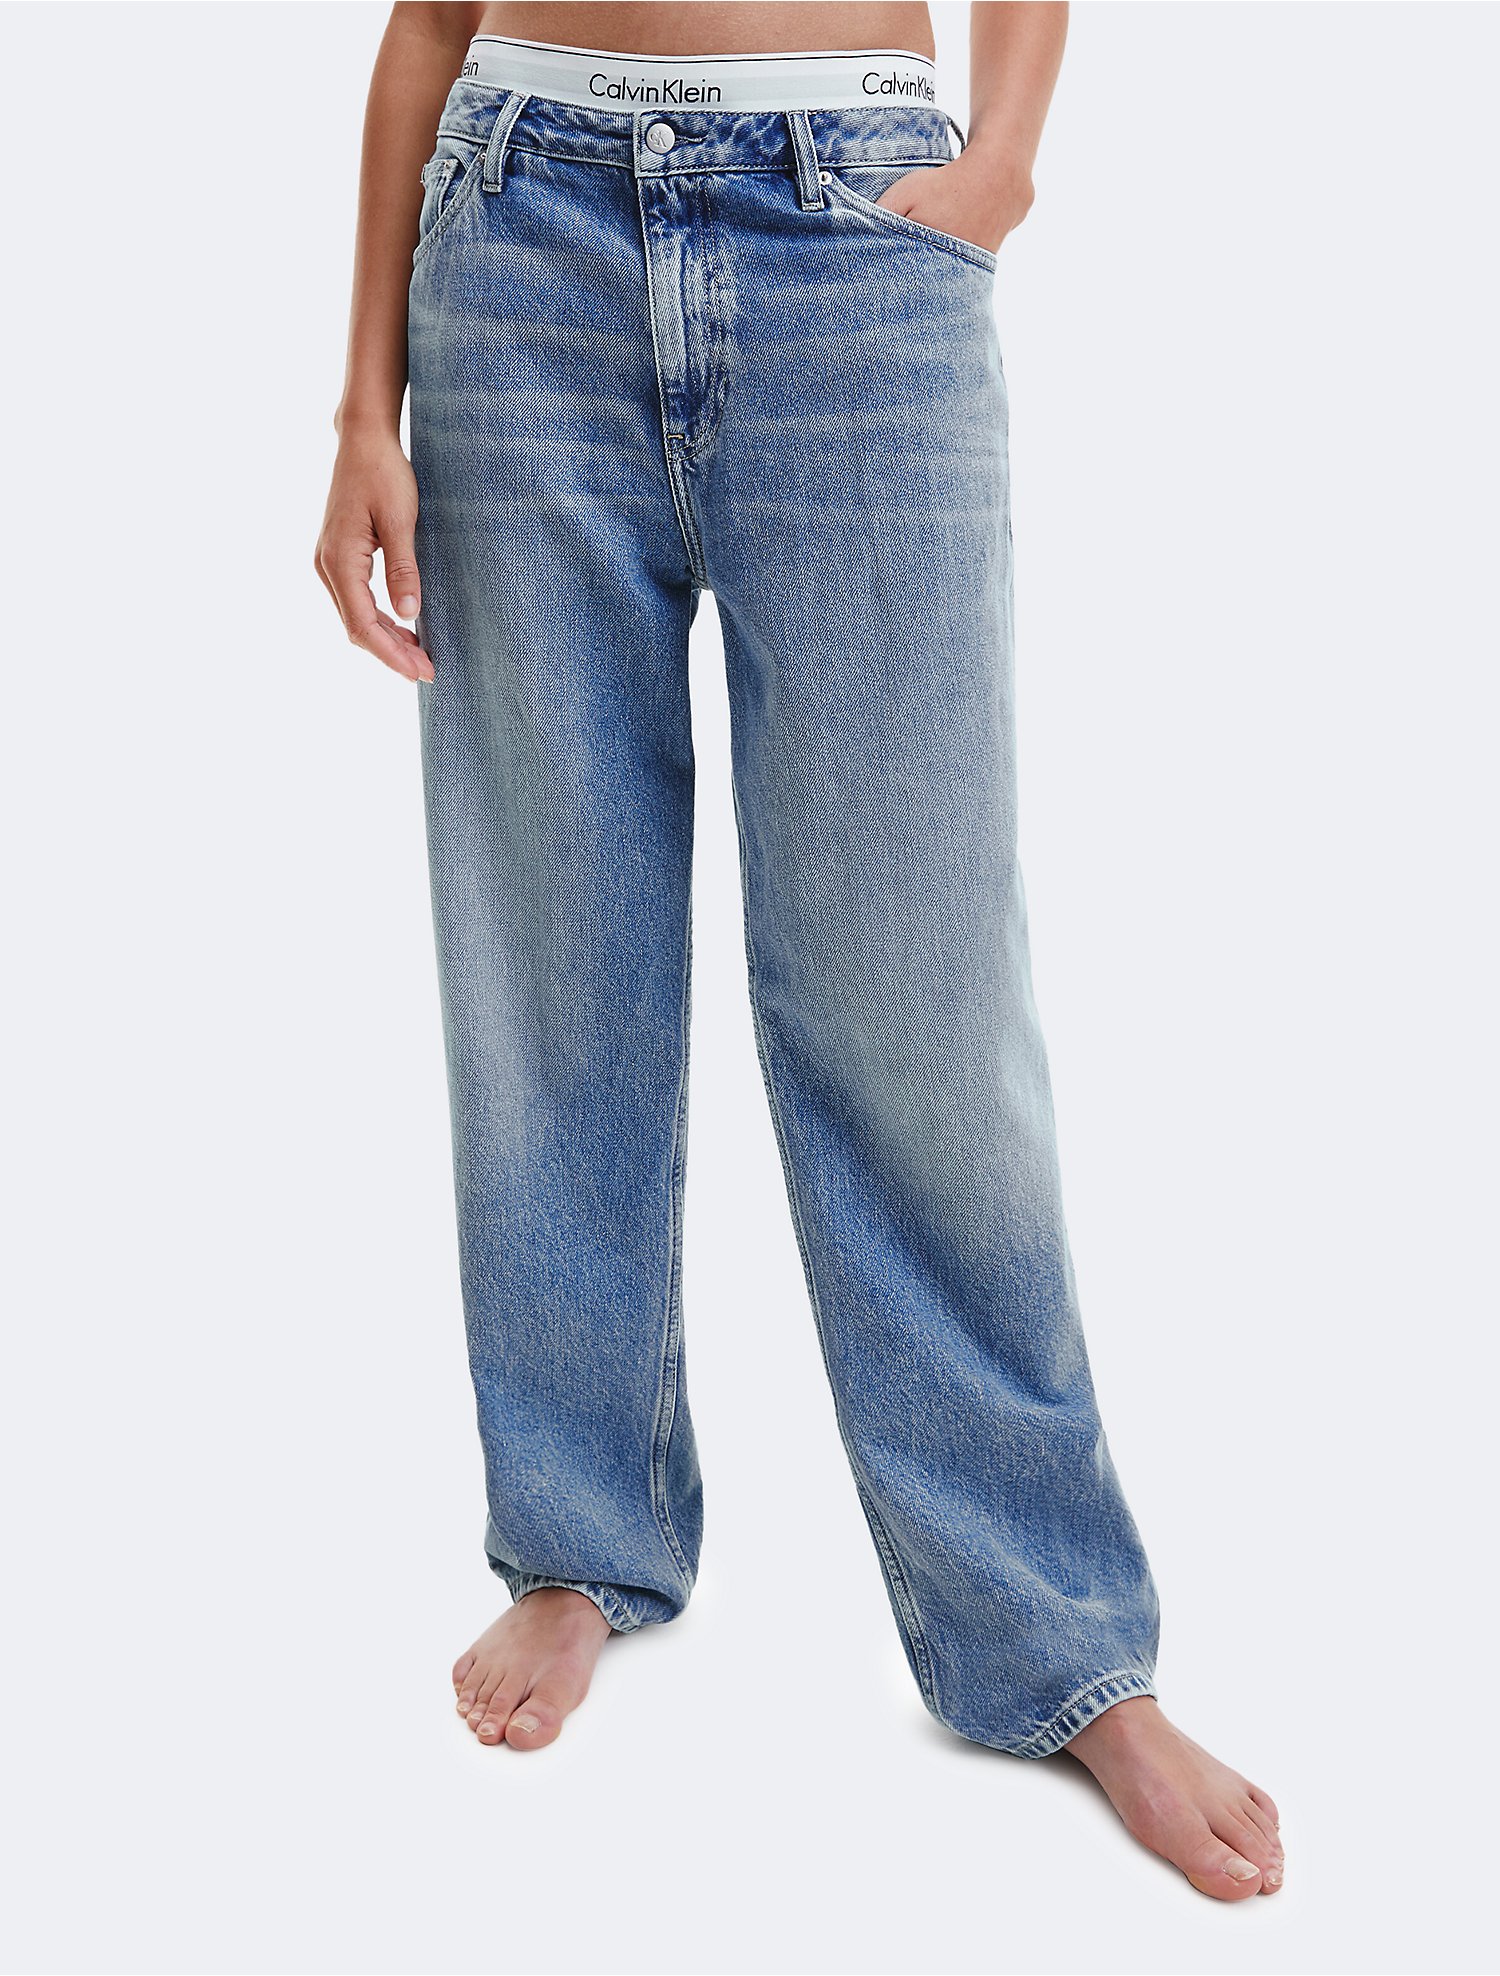 Samengroeiing vervolging Onweersbui Light Wash 90s Straight Jeans | Calvin Klein® USA